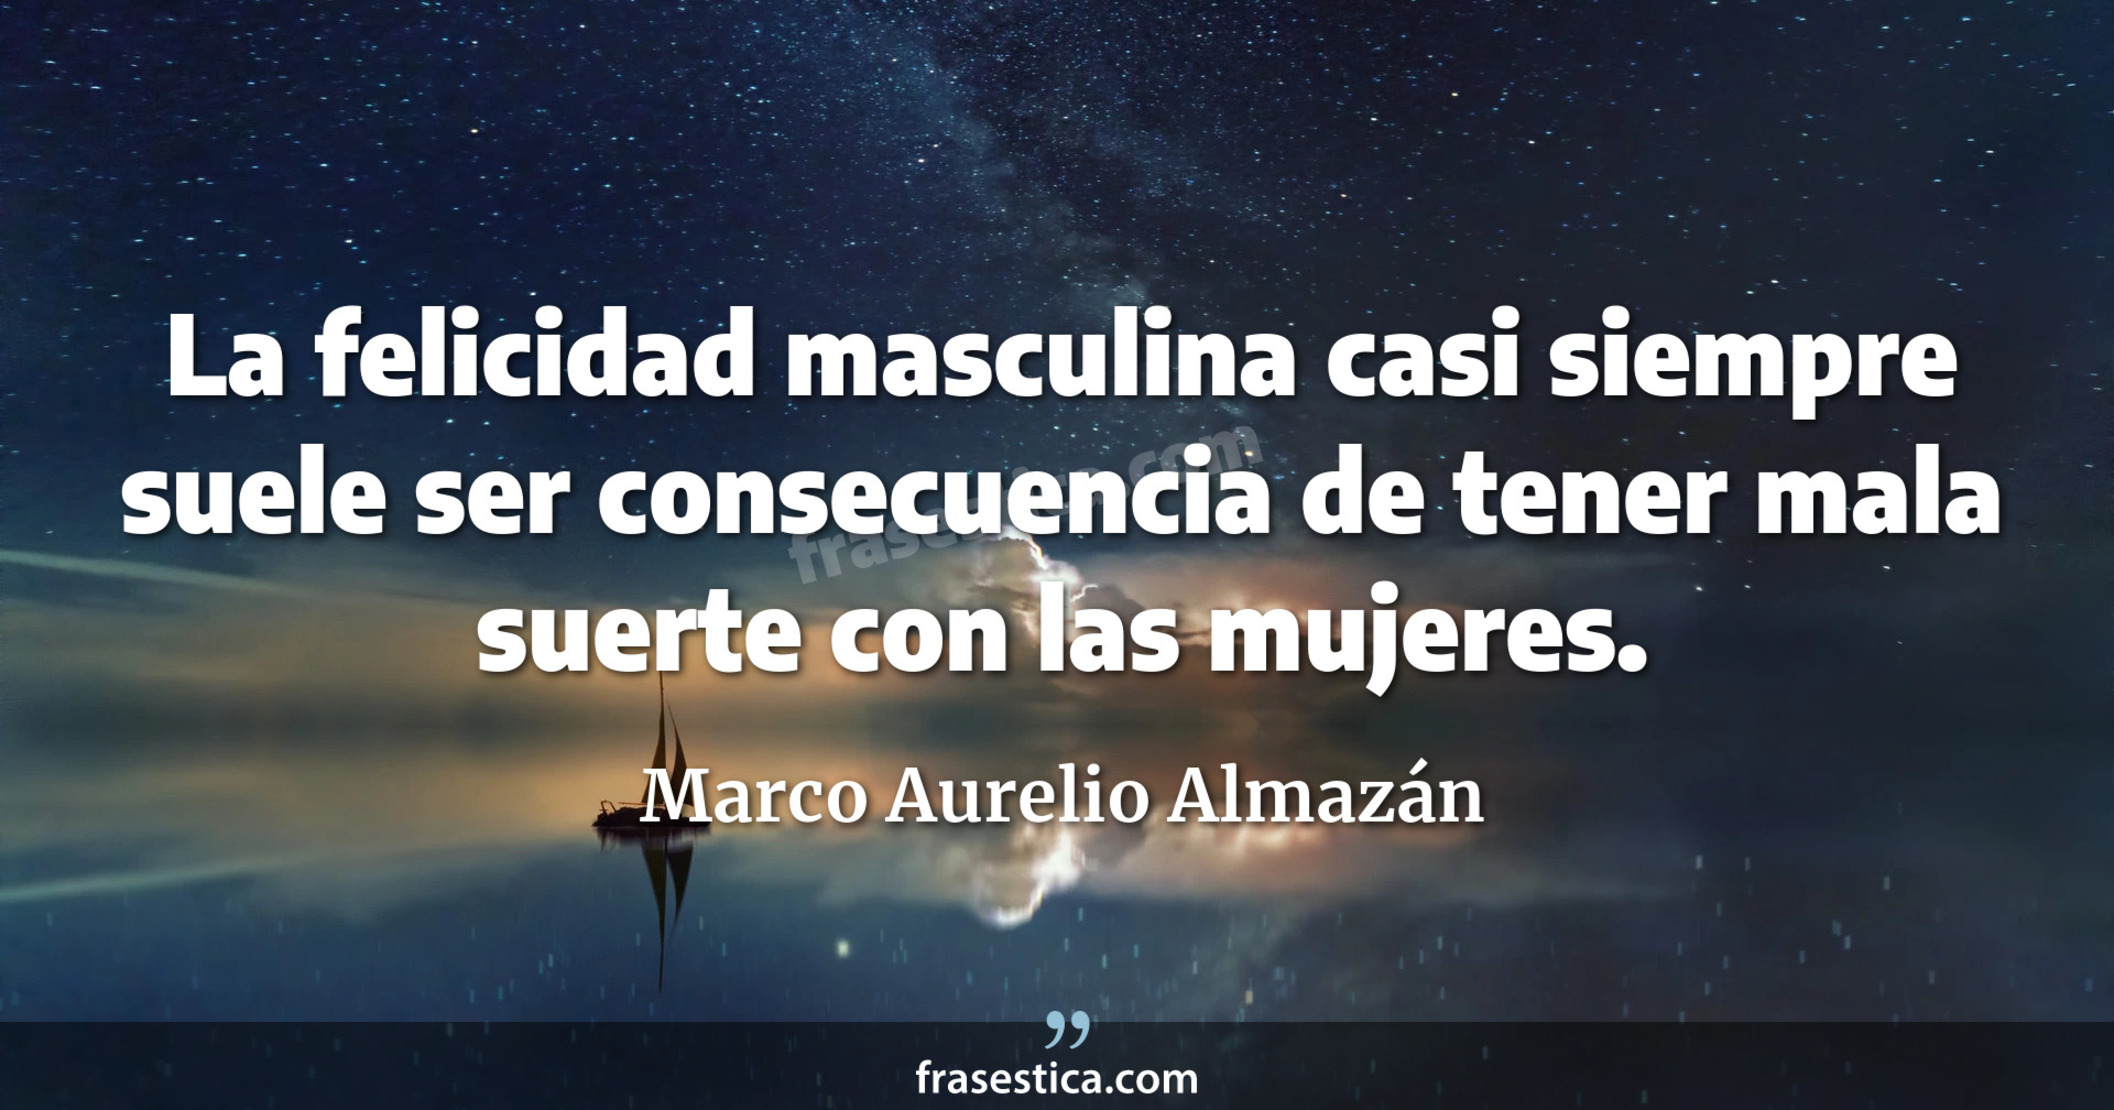 La felicidad masculina casi siempre suele ser consecuencia de tener mala suerte con las mujeres. - Marco Aurelio Almazán